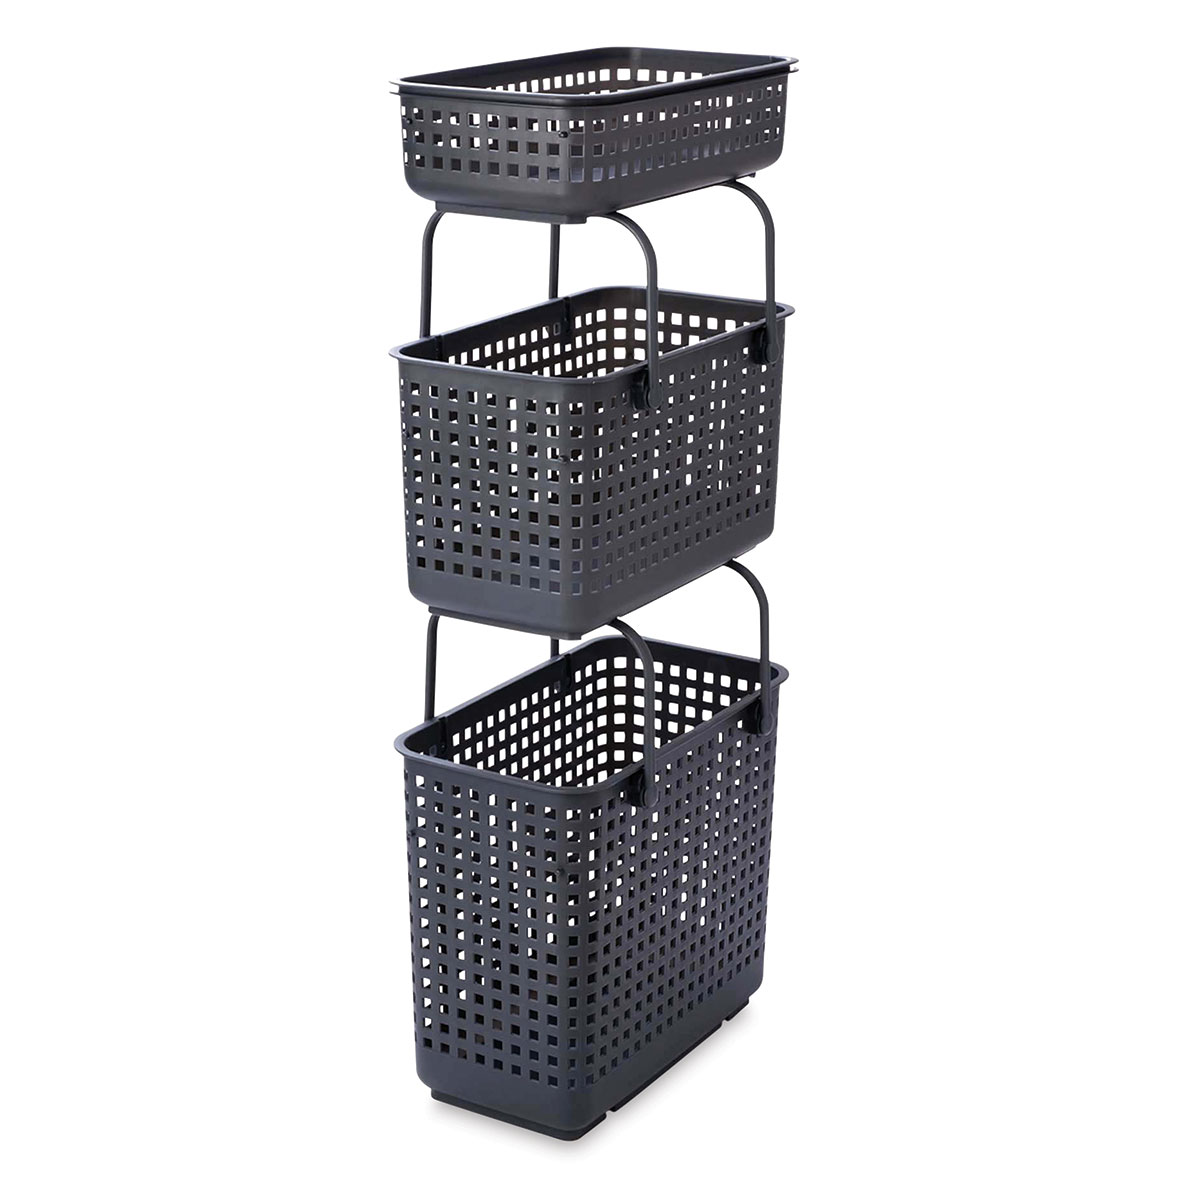 Like-it Modular Storage Basket - Gray, Small